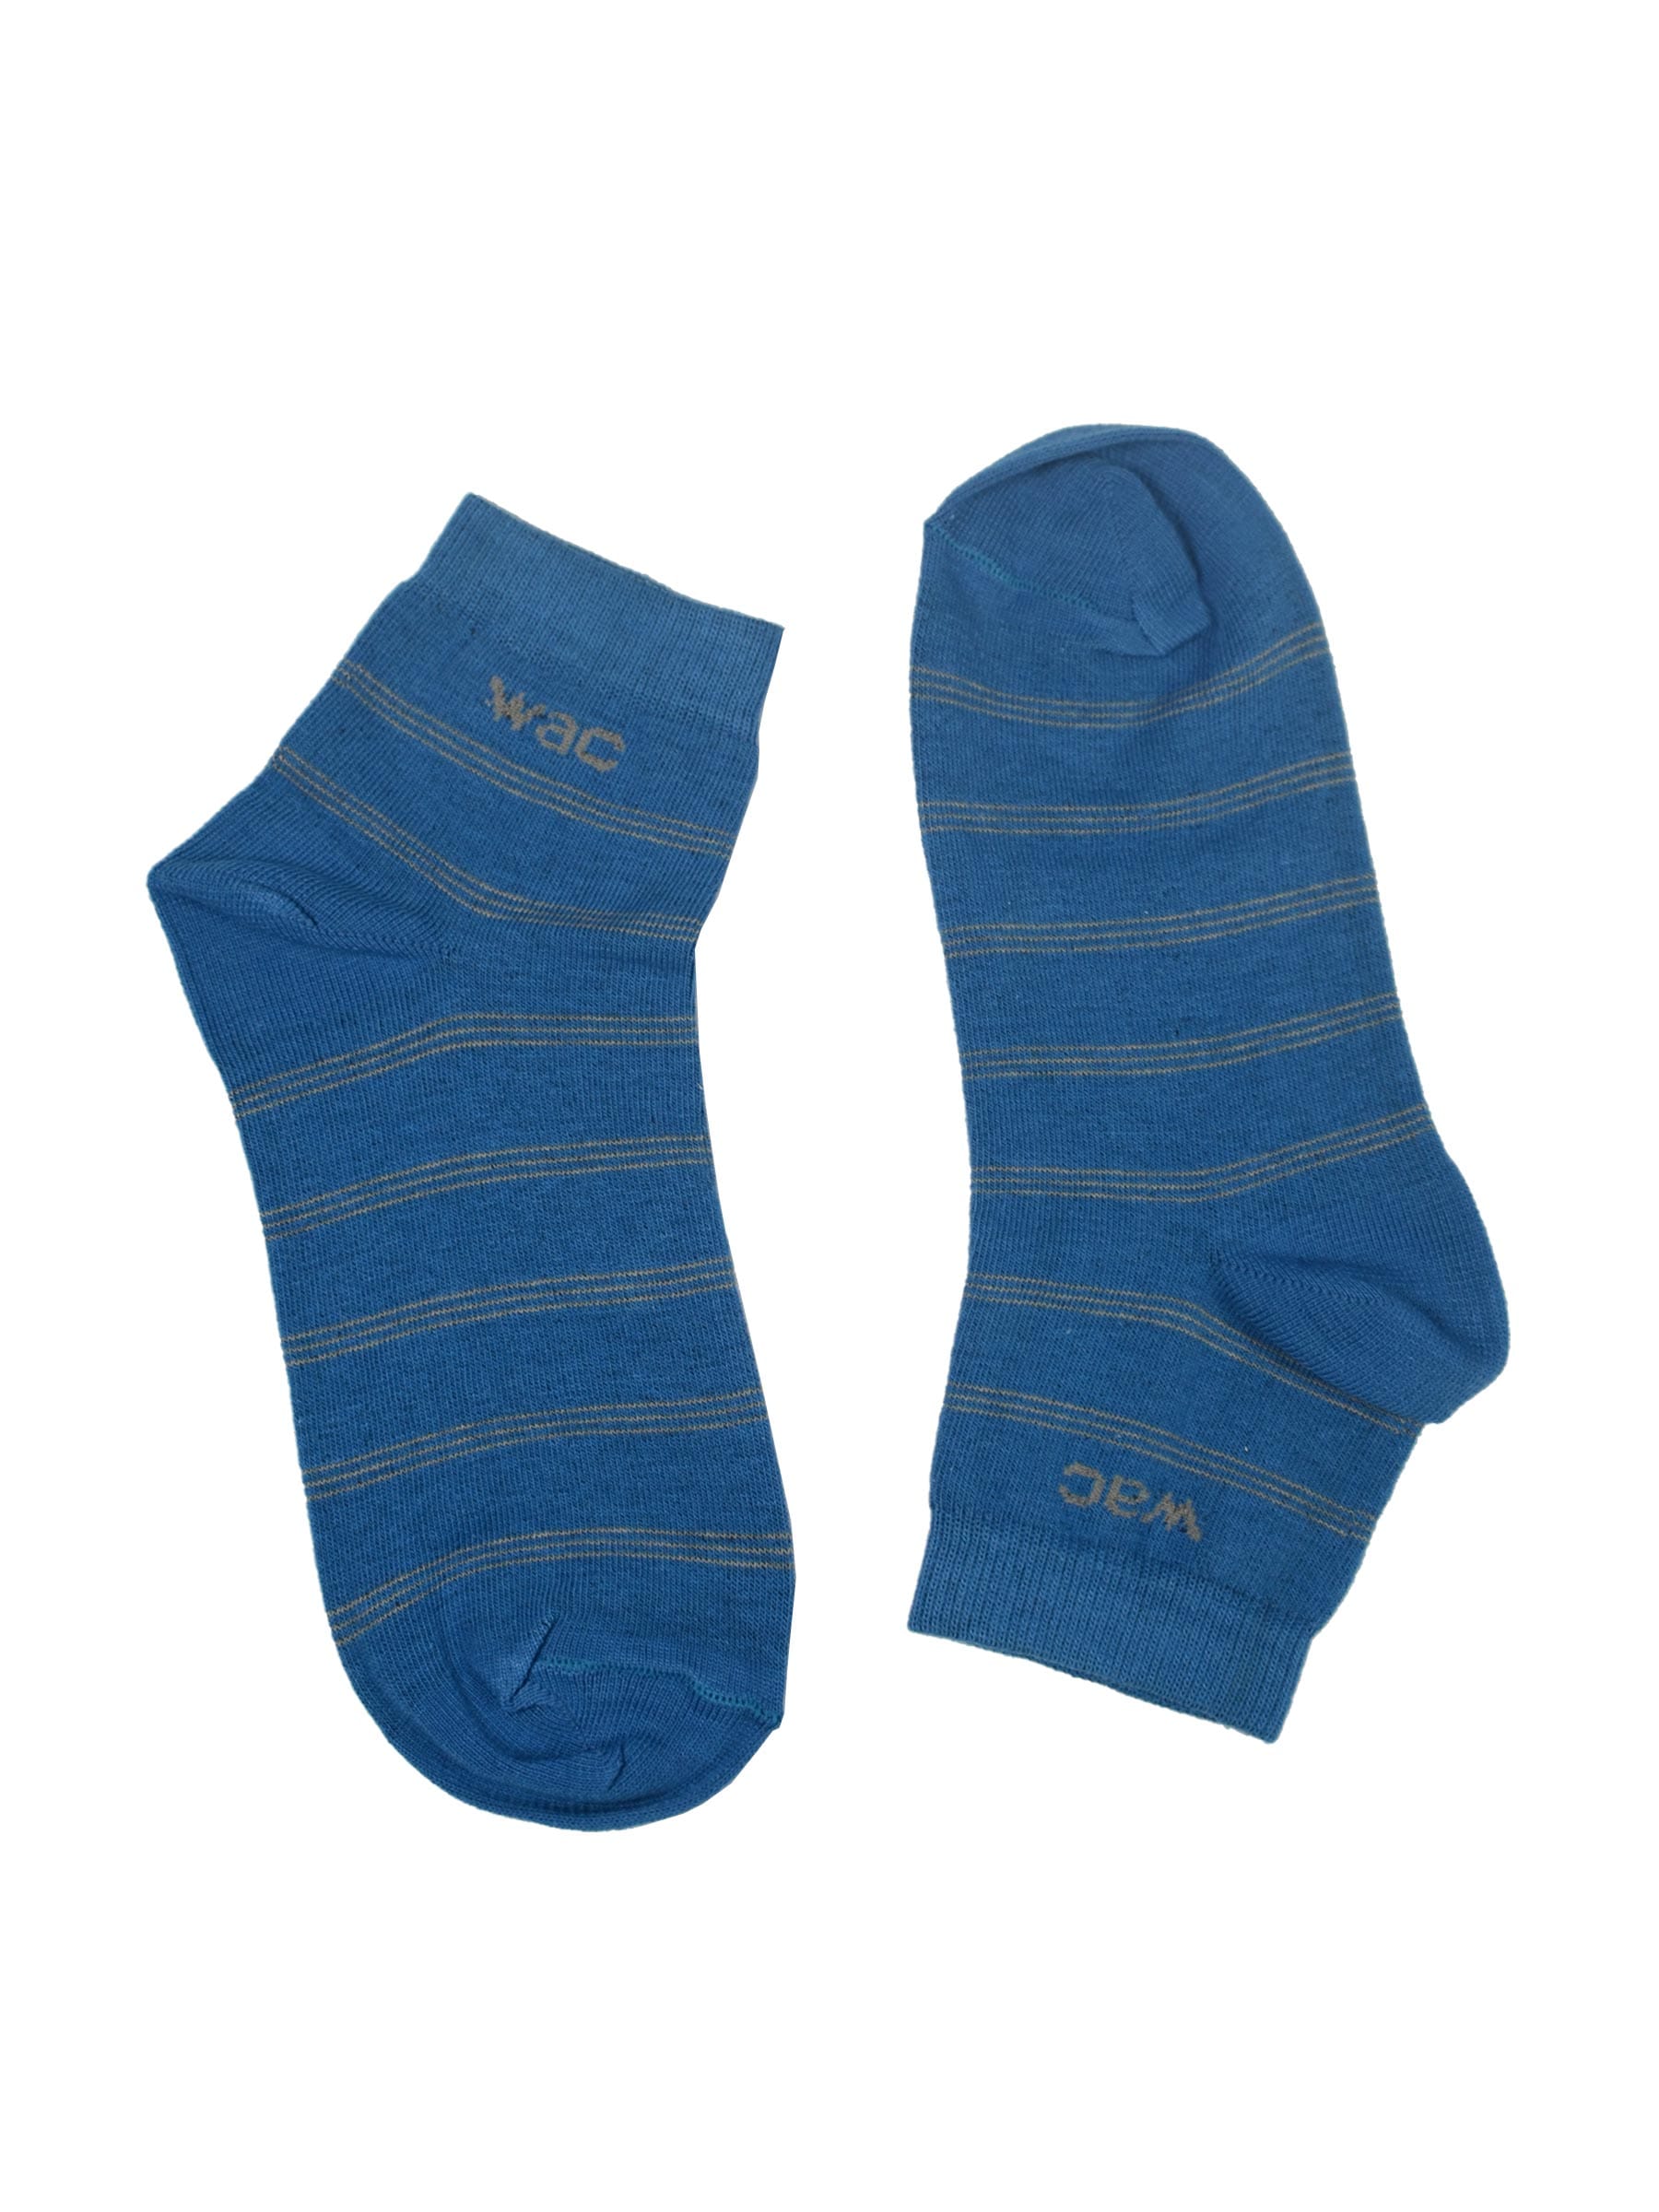 Wrangler Women's Blue Ankle Length Socks